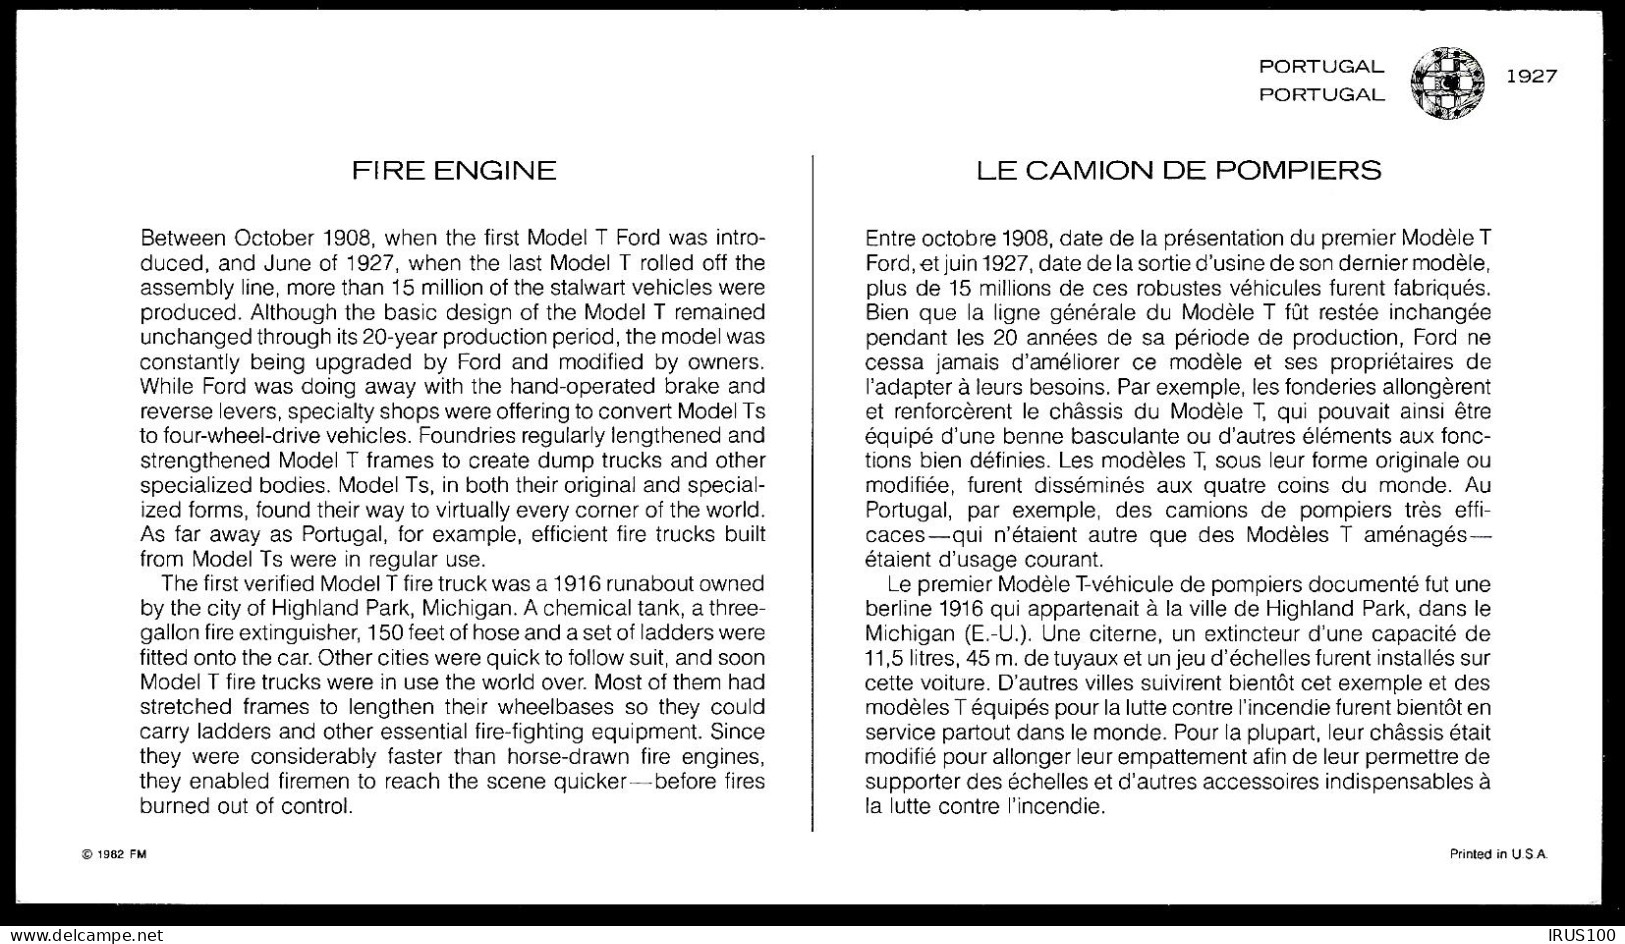 PORTUGAL - POMPIERS / HISTOIRE DES TRANSPORTS - (3 DOCUMENTS) - Pompieri